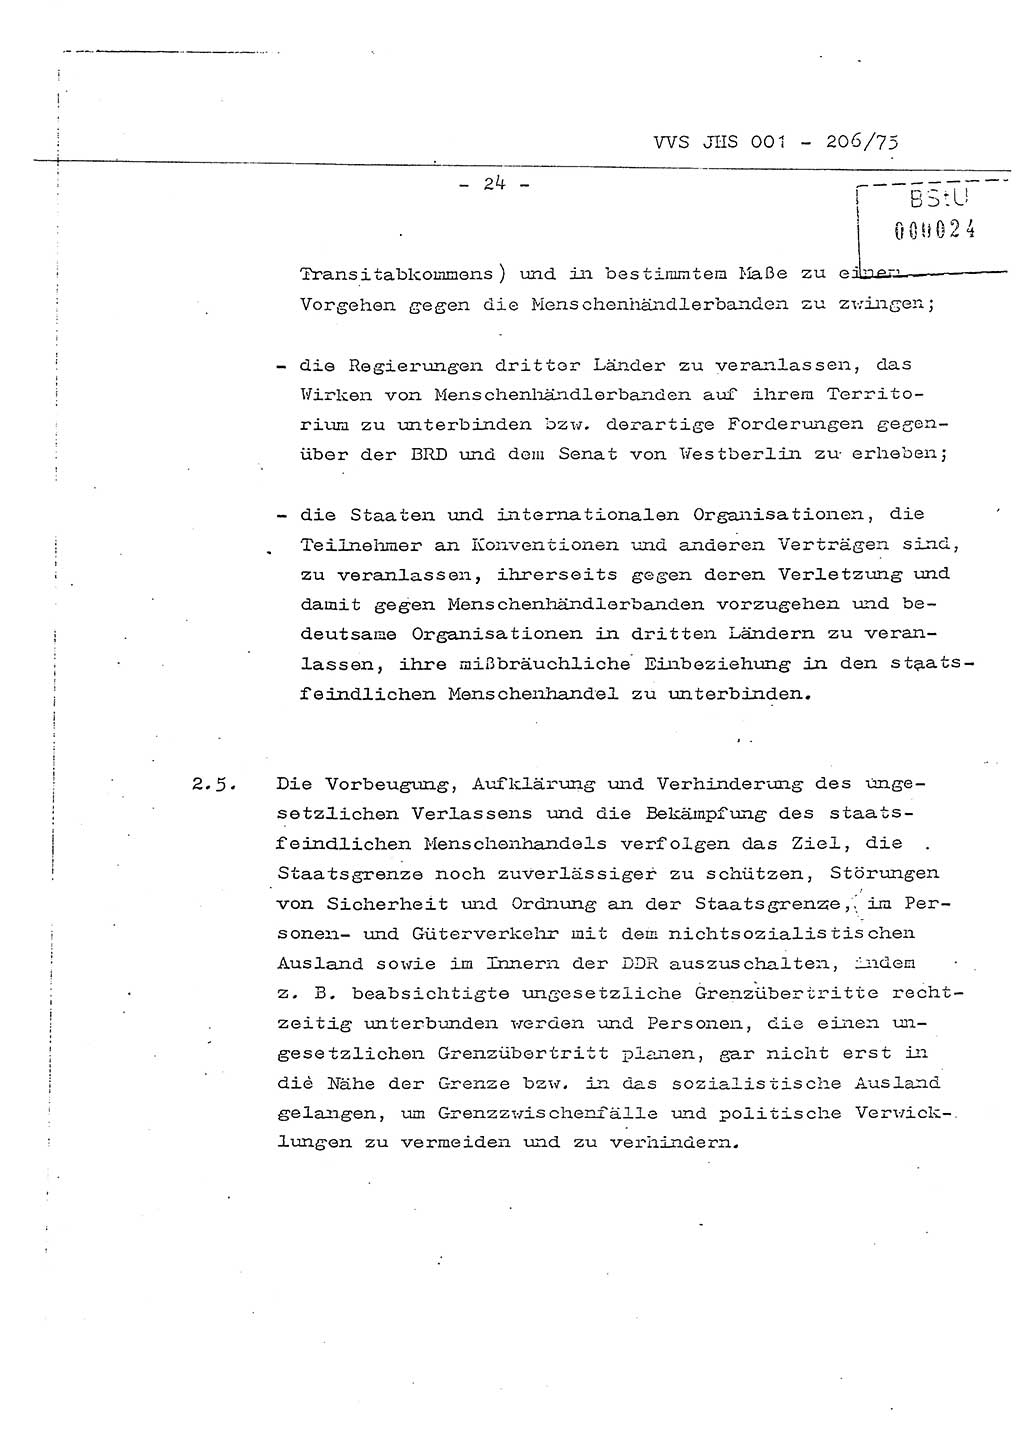 Dissertation Generalmajor Manfred Hummitzsch (Leiter der BV Leipzig), Generalmajor Heinz Fiedler (HA Ⅵ), Oberst Rolf Fister (HA Ⅸ), Ministerium für Staatssicherheit (MfS) [Deutsche Demokratische Republik (DDR)], Juristische Hochschule (JHS), Vertrauliche Verschlußsache (VVS) 001-206/75, Potsdam 1975, Seite 24 (Diss. MfS DDR JHS VVS 001-206/75 1975, S. 24)